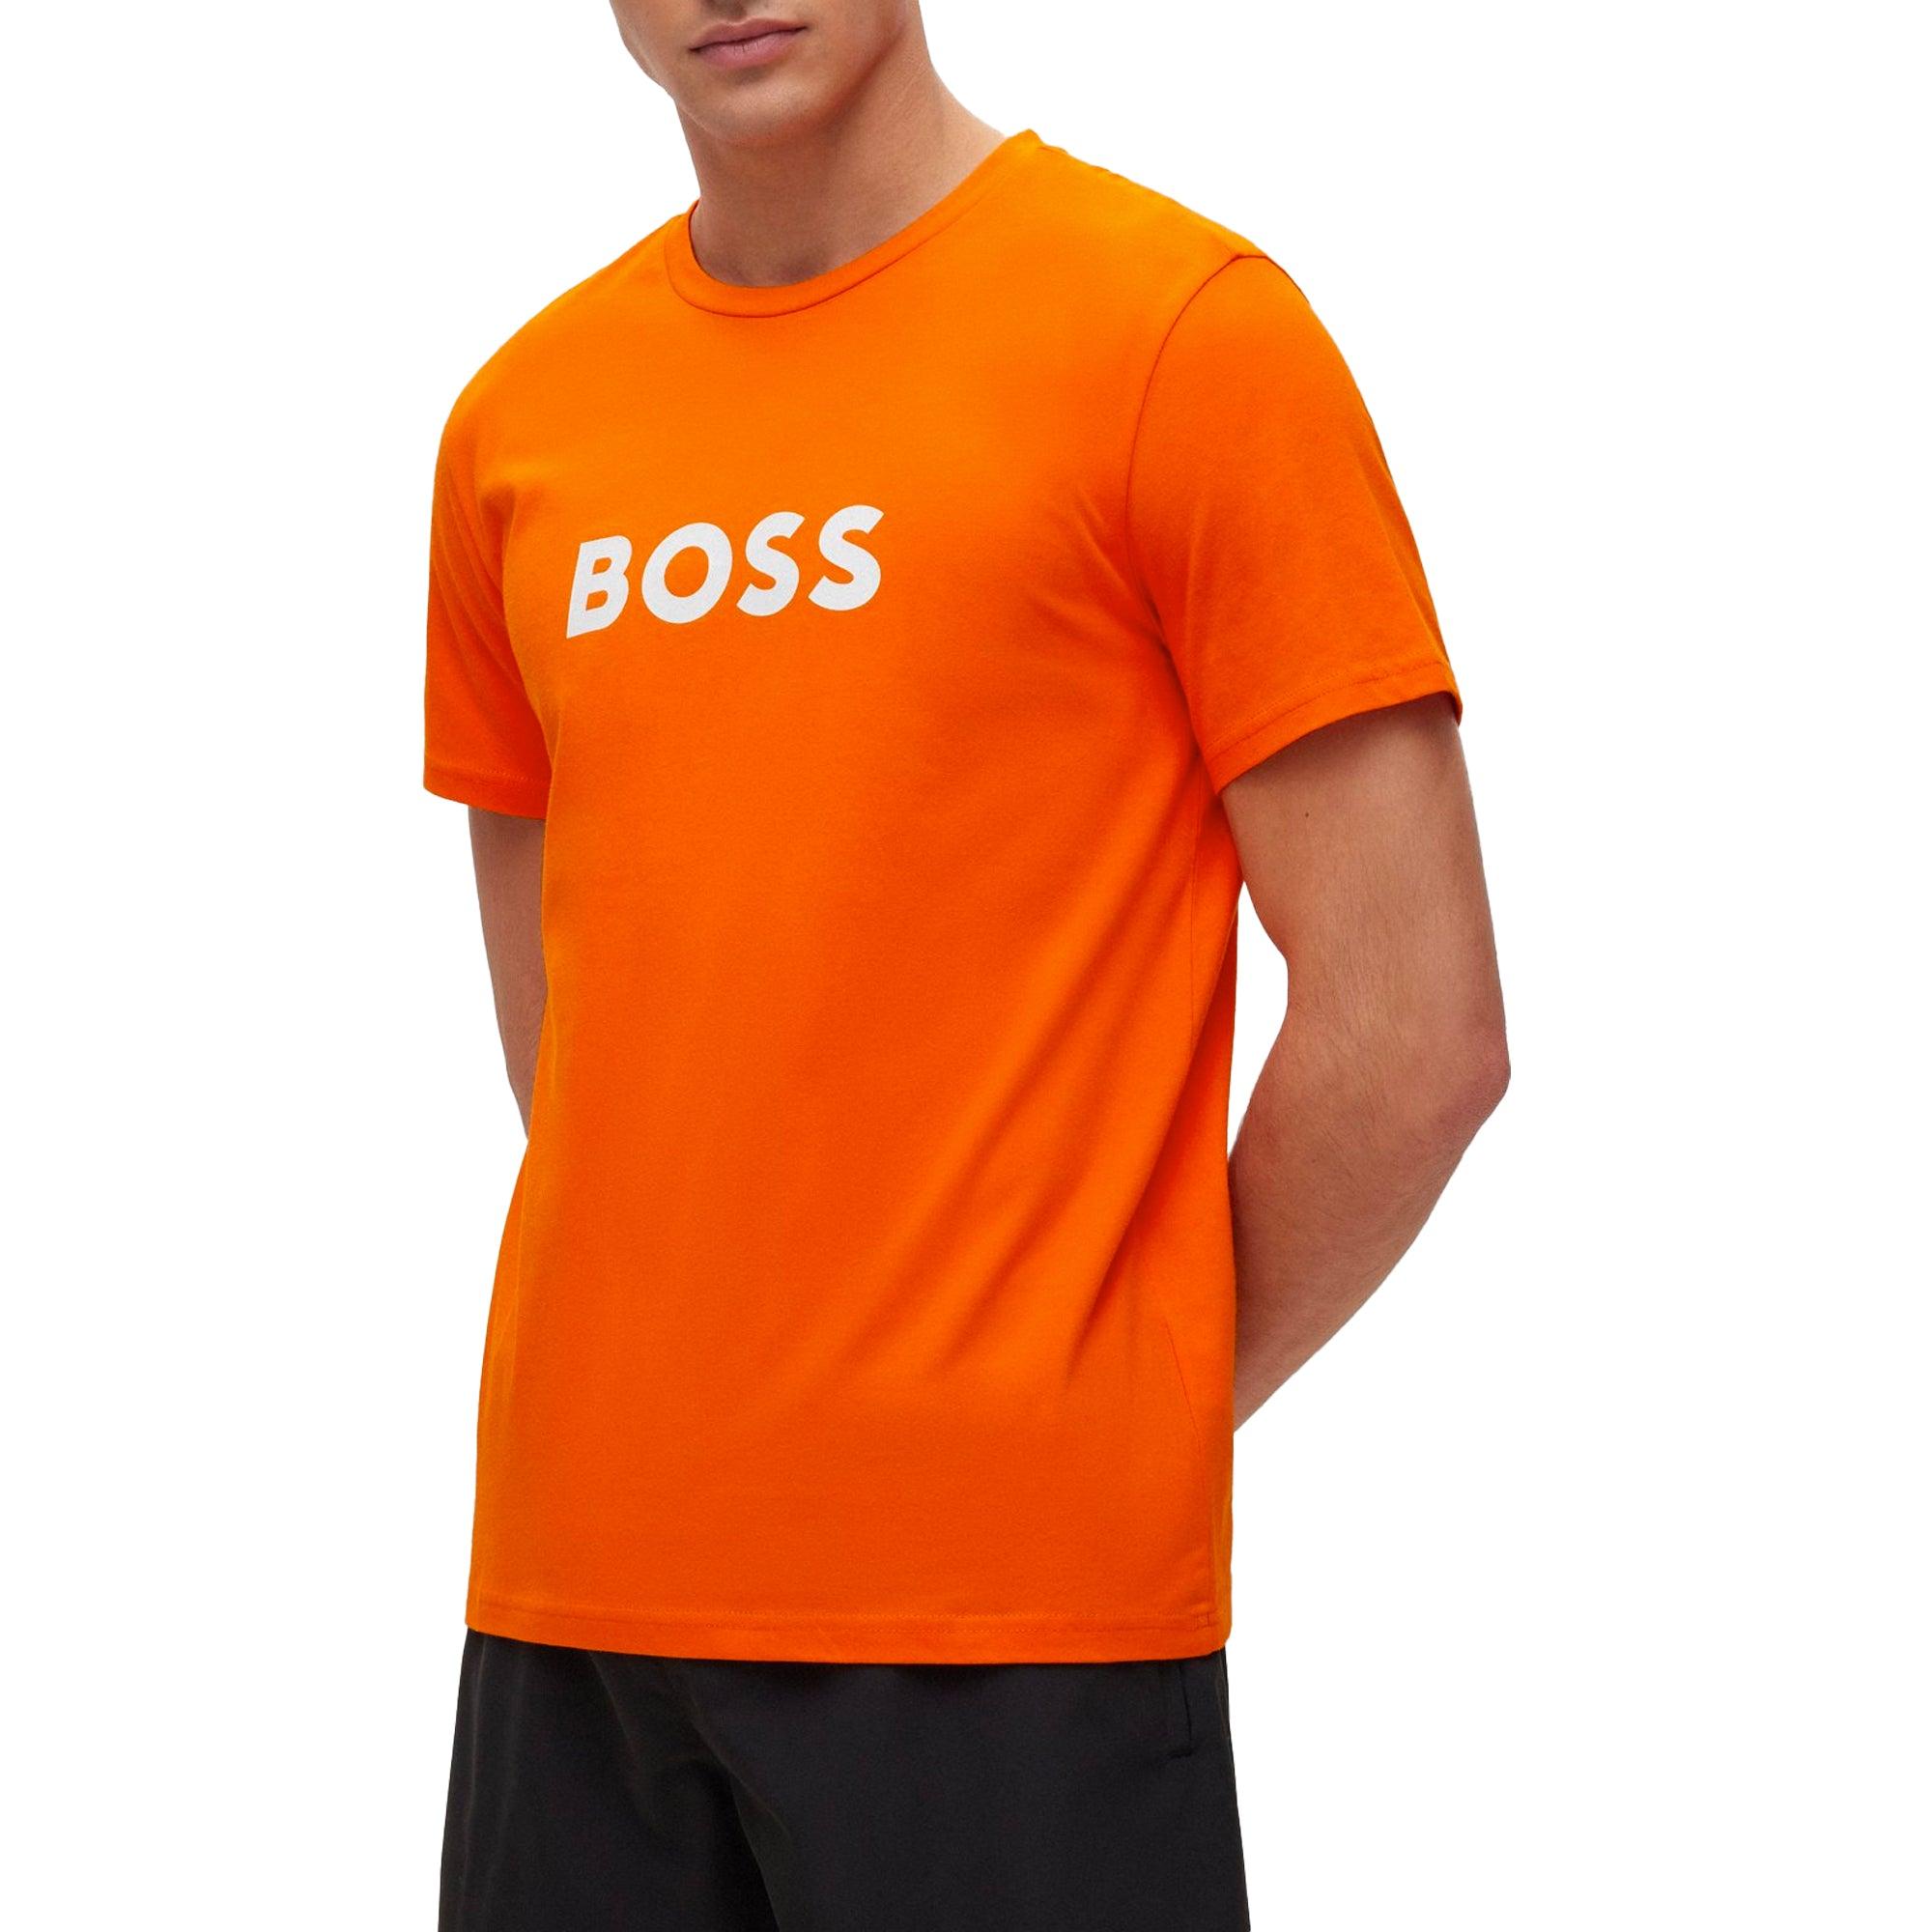 BOSS by HUGO BOSS Rn for T-shirt in | Lyst Orange Men